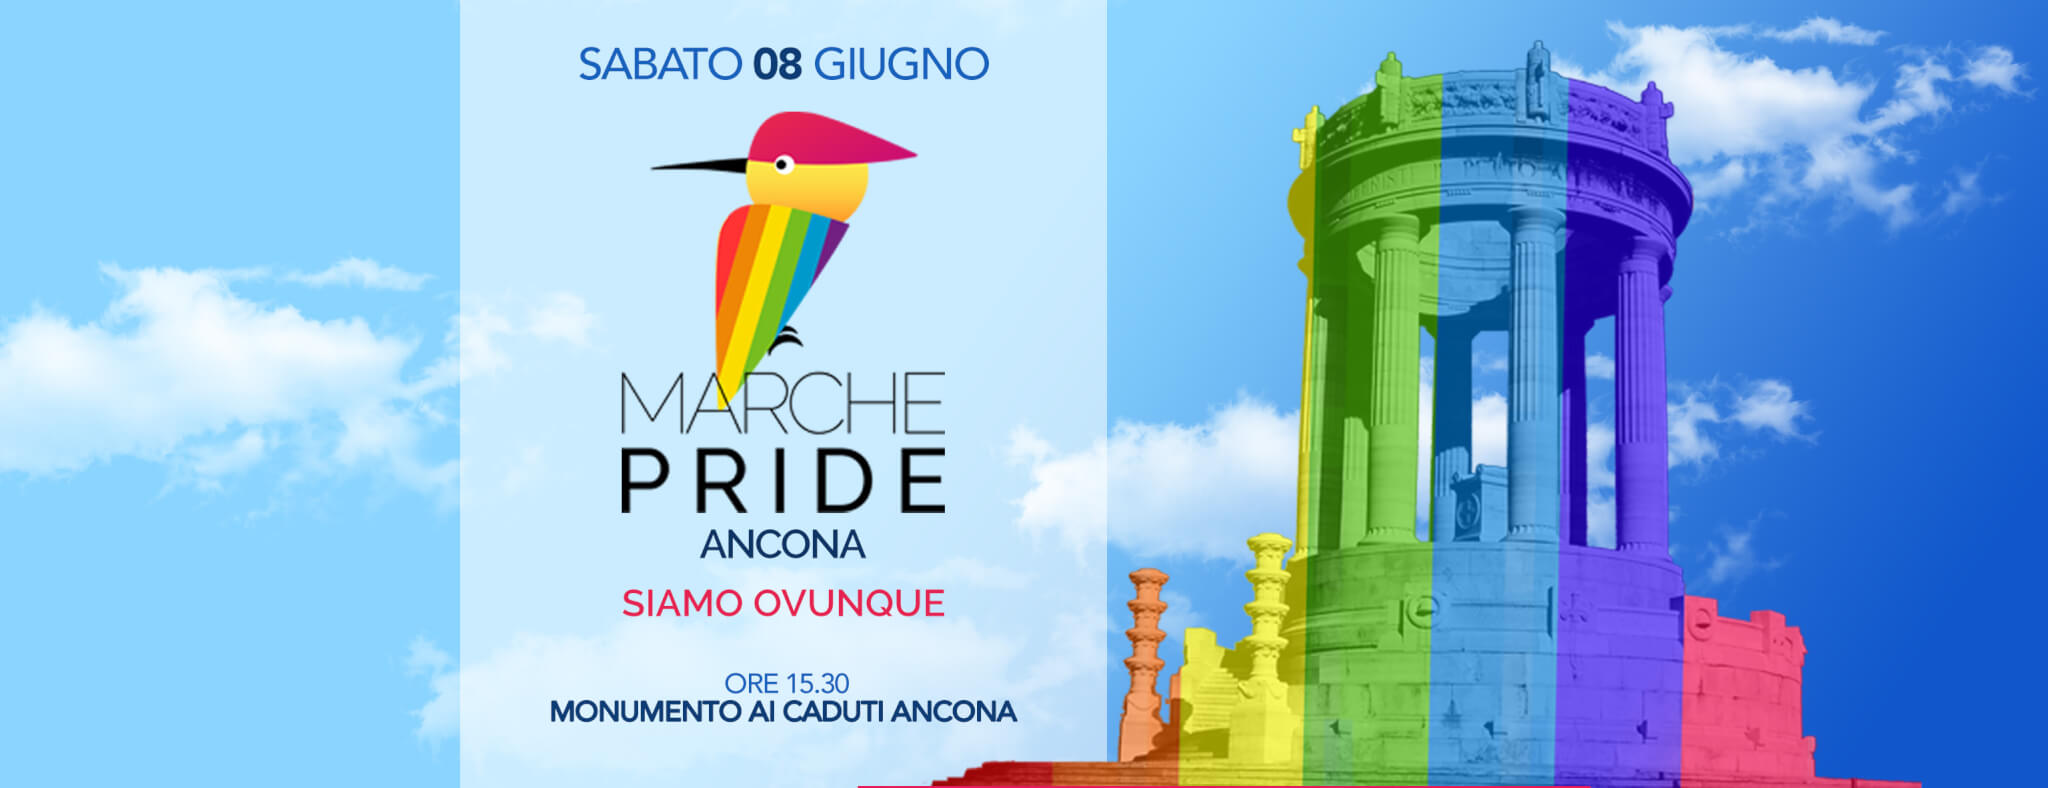 Onda Pride 2019, non solo Roma: oggi in strada anche Trieste, Ancona, Messina e Pavia - Marche Pride - Gay.it